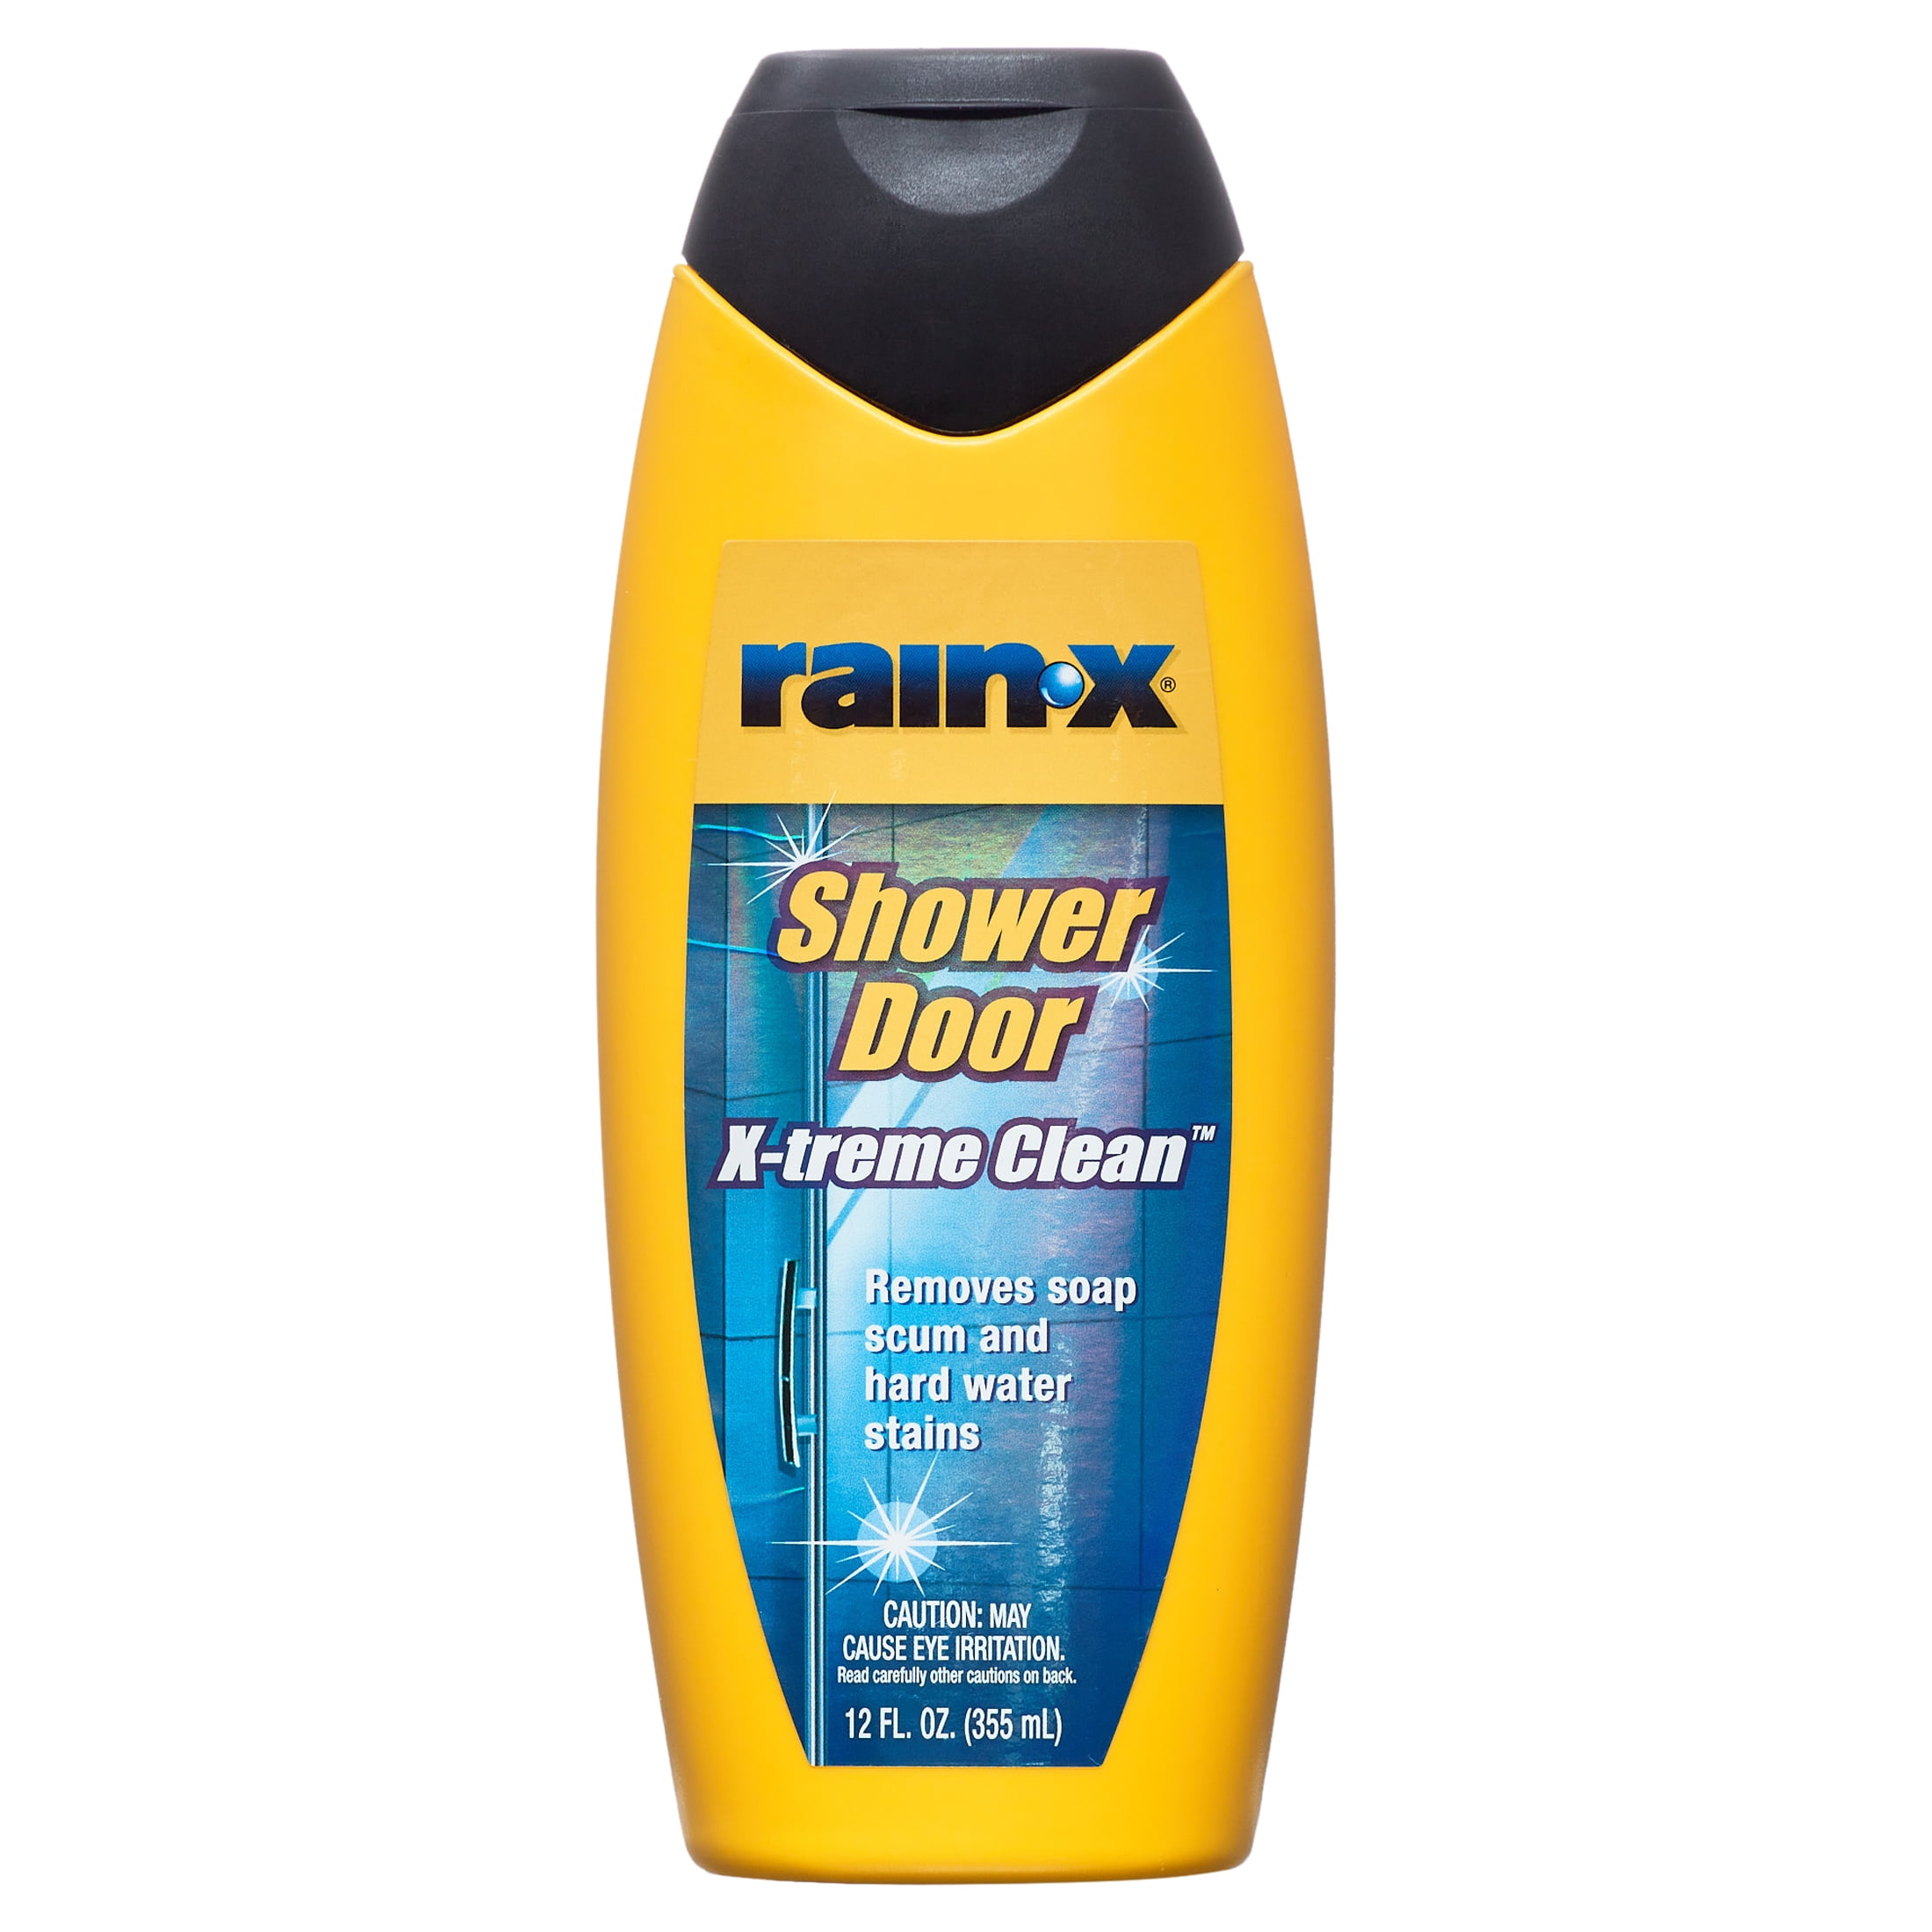  Rainx Shower Door Water Repellent